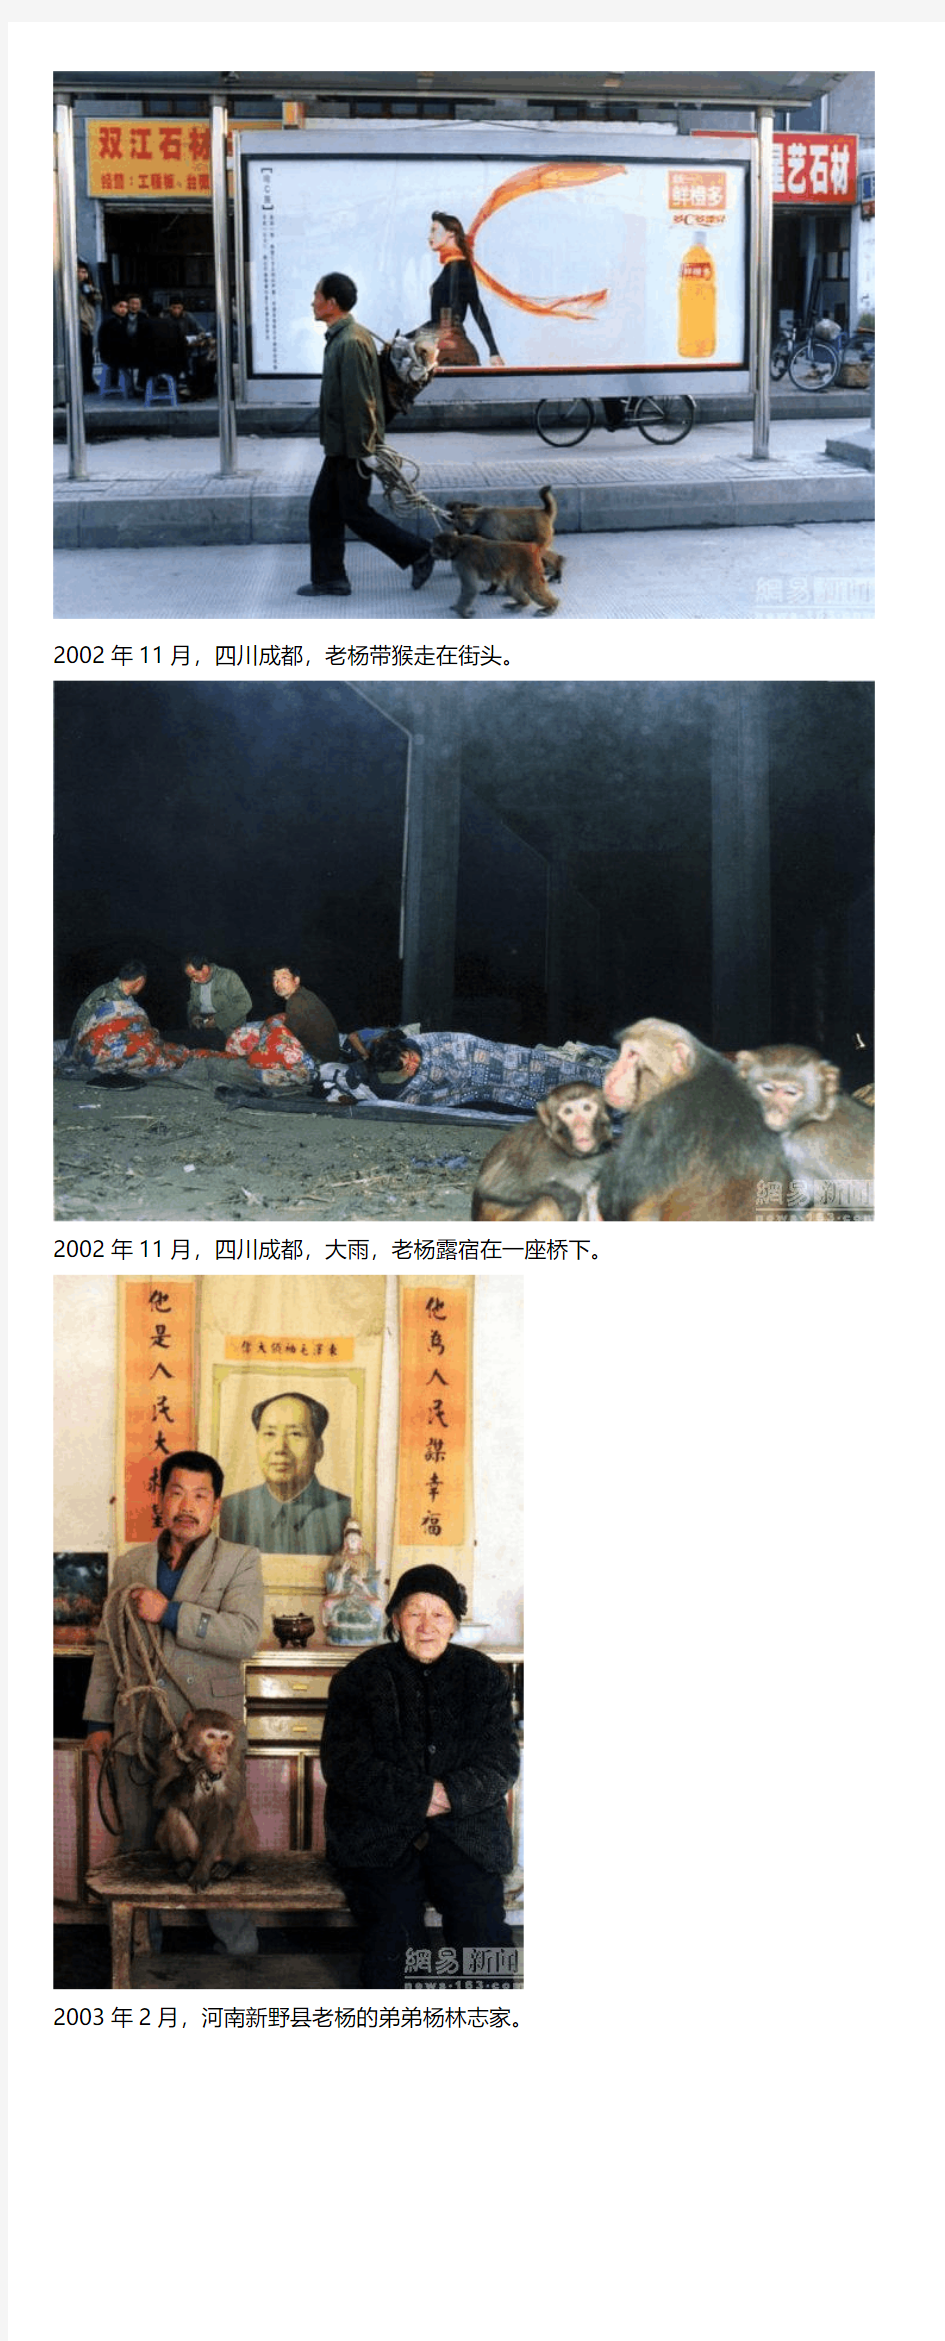 被环球摄影师拍,被城管抓,被赵钟祥白眼,尴尬的非议：河南耍猴人